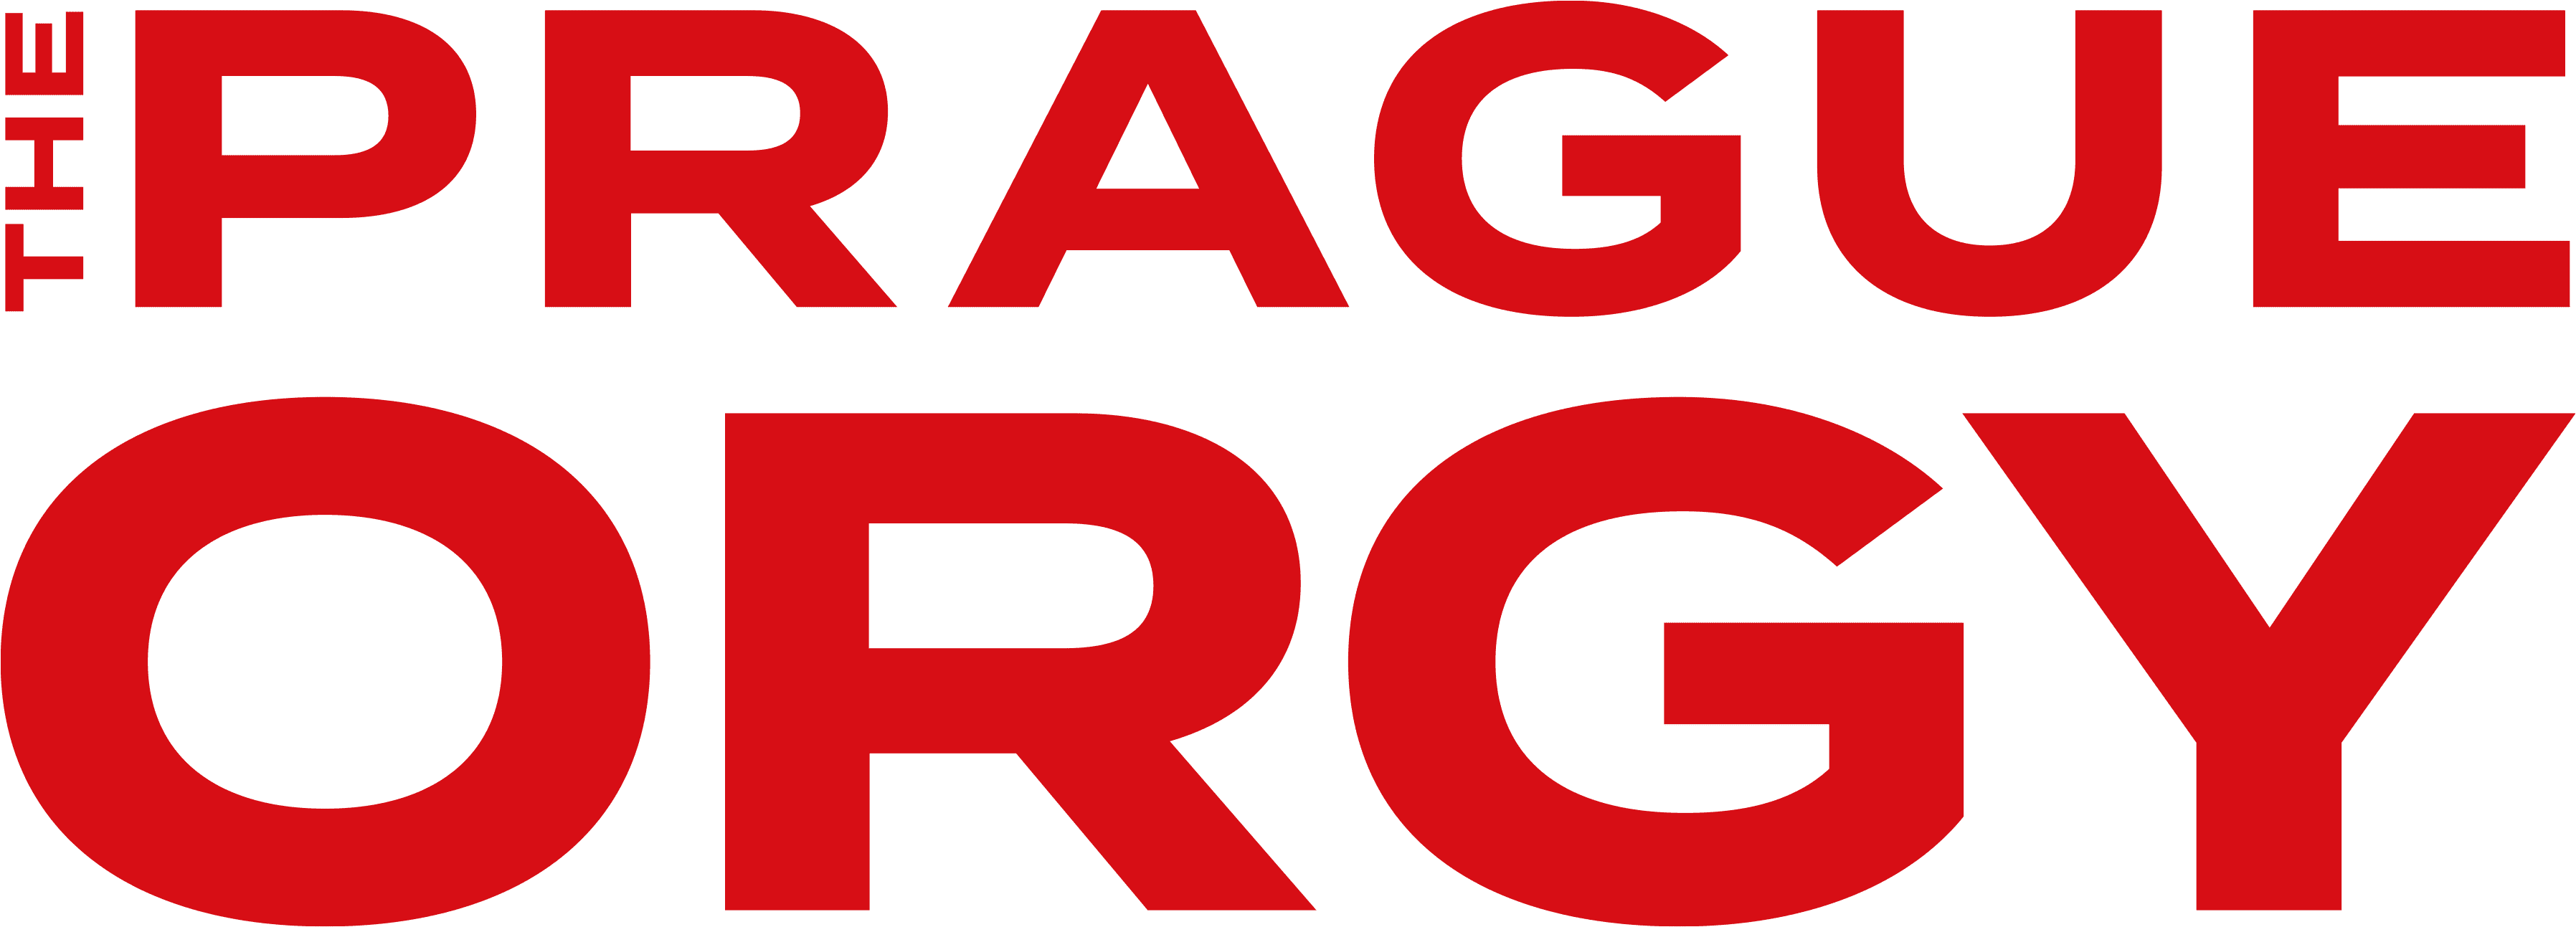 The Prague Orgy logo